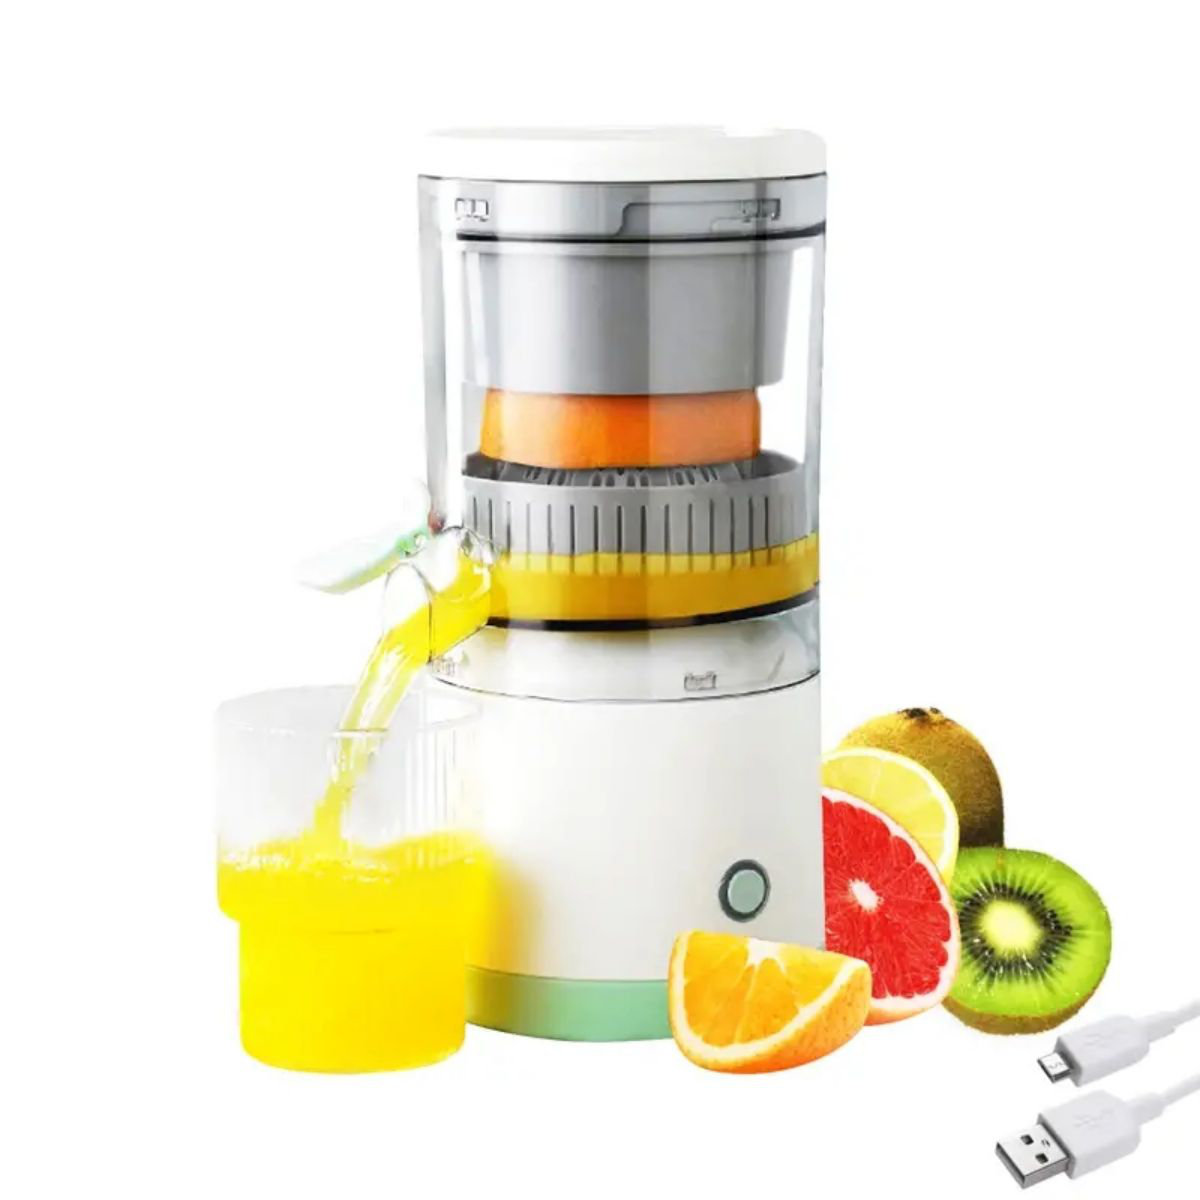 Citrus Juicers Kenya, Online Juicers Shop